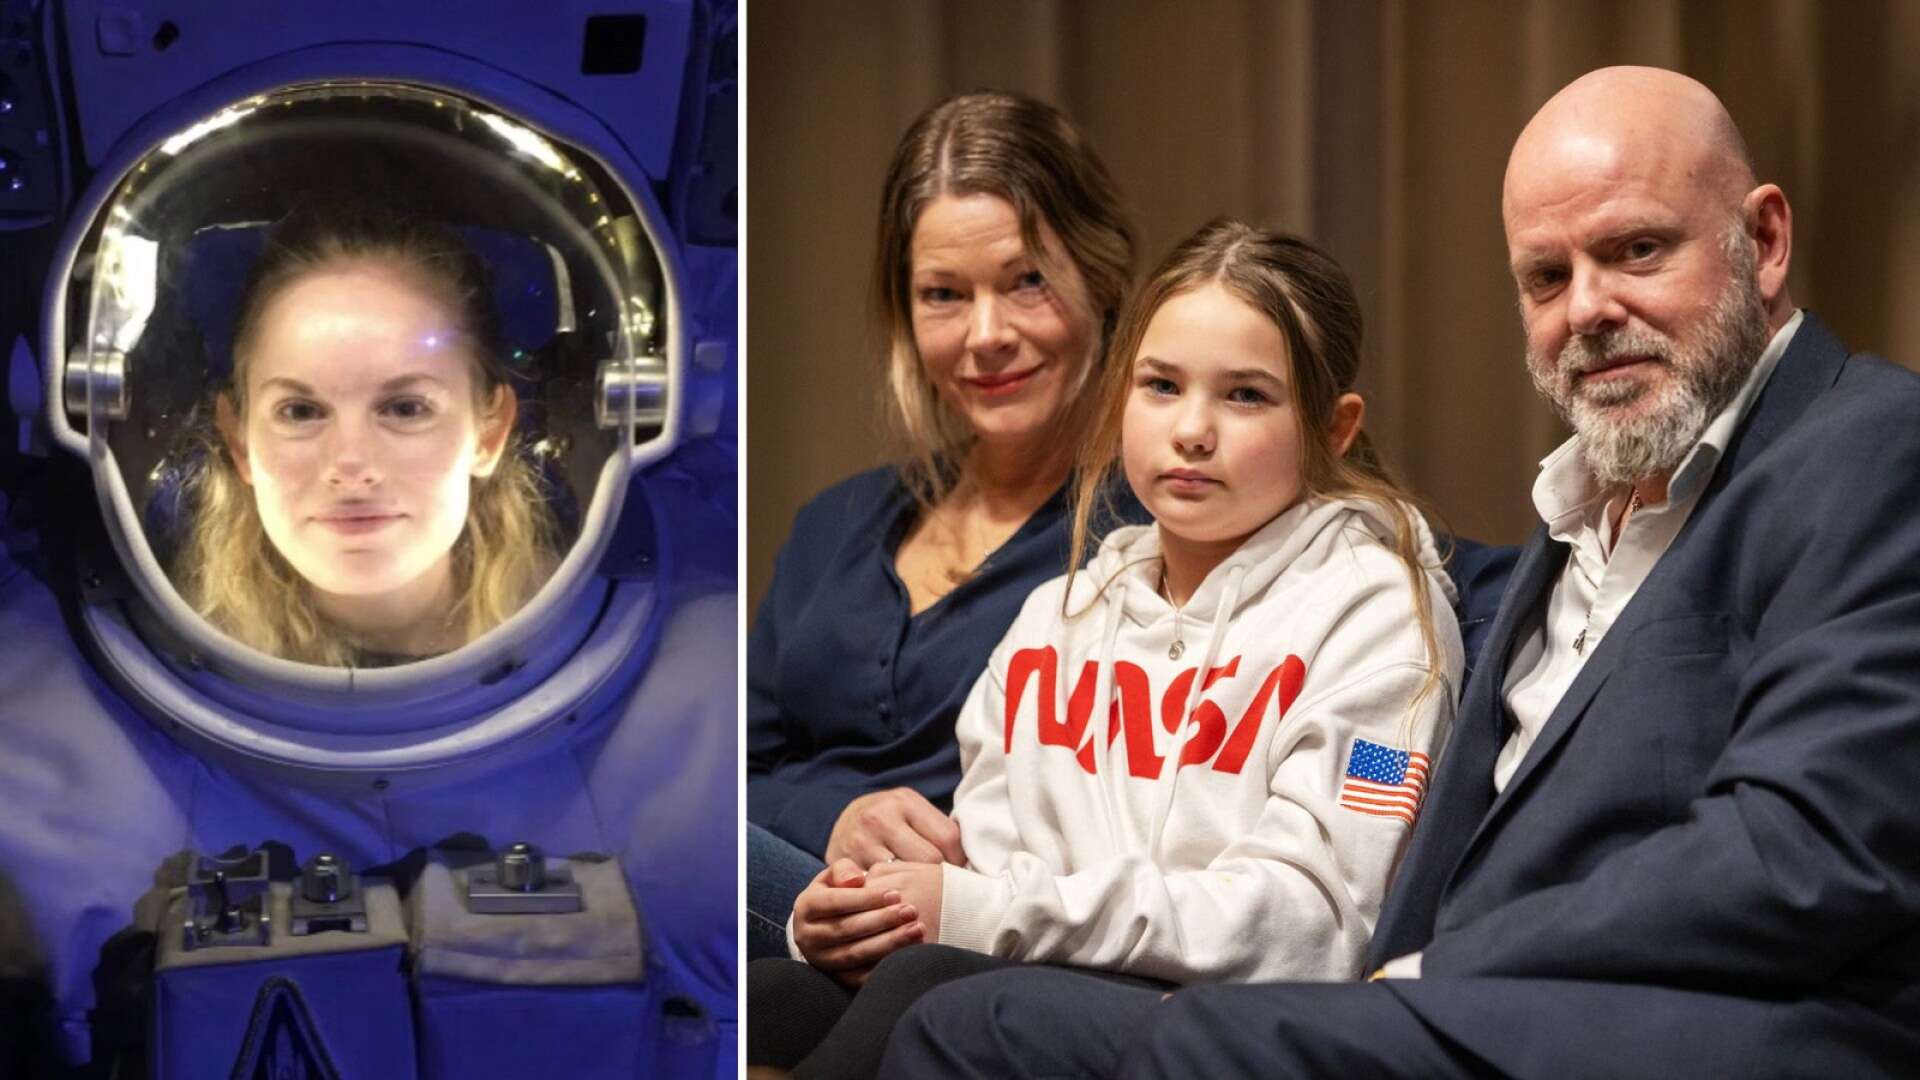 Värmländske astronautens hälsning till familjen: ”Jättefin”